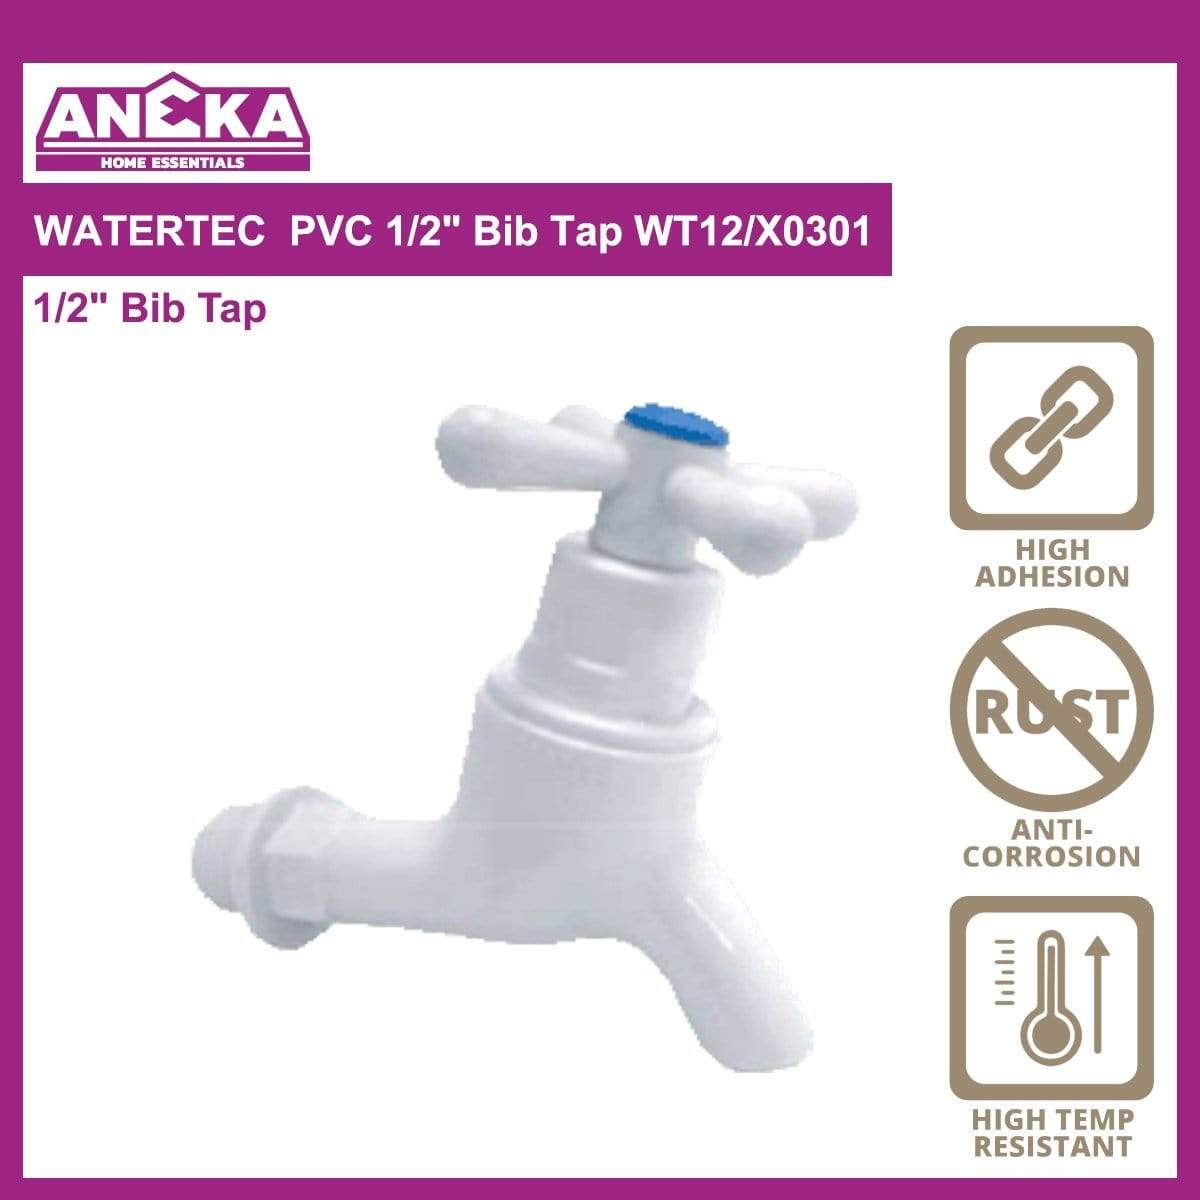 WATERTEC PVC 1/2" Bib Tap WT12/X0301